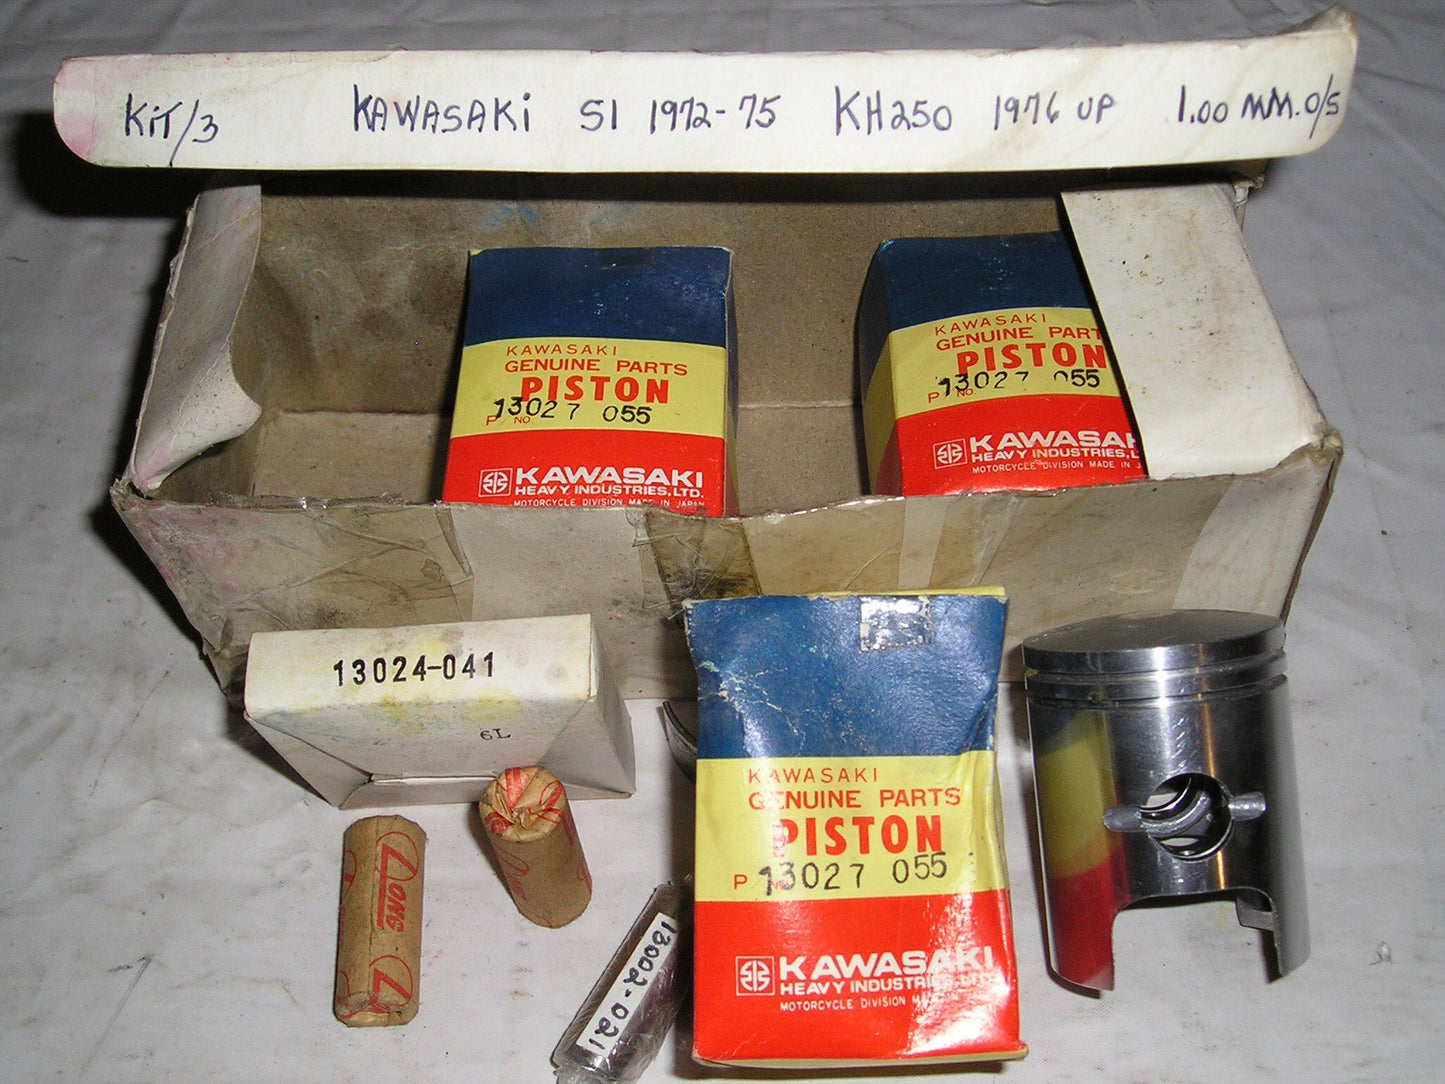 KAWASAKI S1 KH250 1972-1976 Piston Kit .040" or 1.00 mm O/S 13027-055